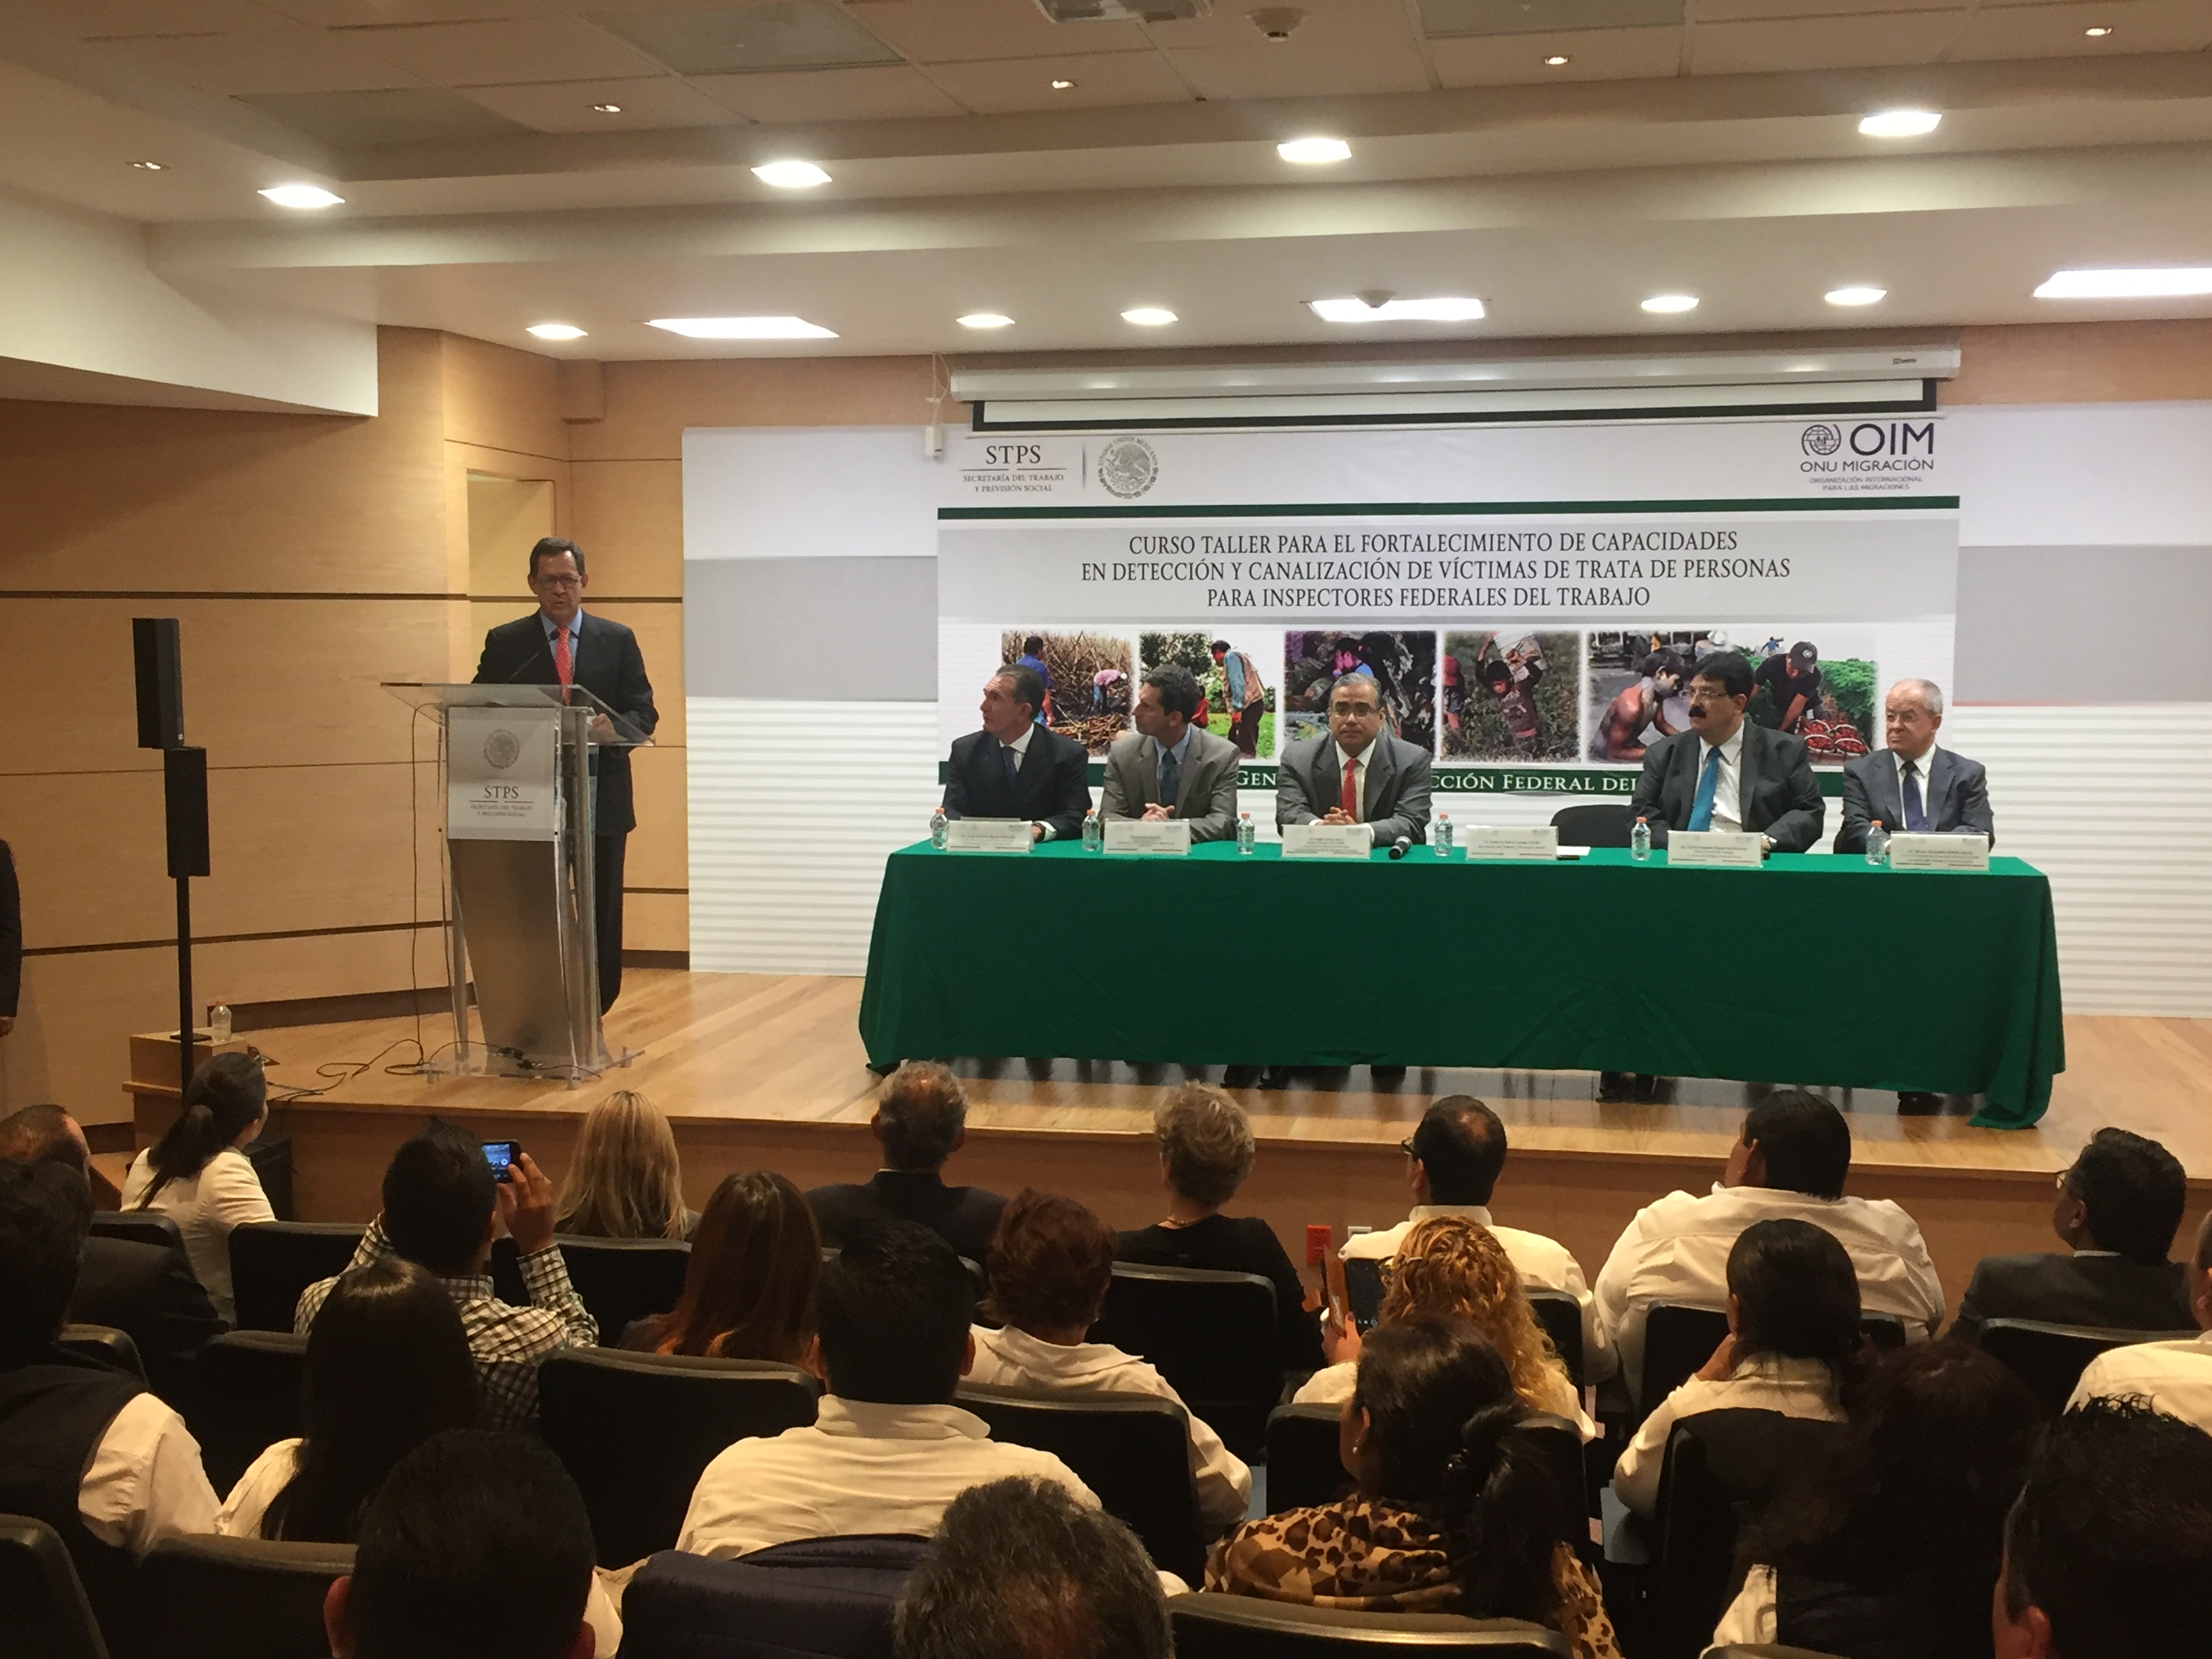 Foto panorámica de la conferencia de prensa acerca del inicio de curso para el Fortalecimiento de Capacidades de Detección y Canalización de Victimas de Trata de Personas para Inspectores Federales. 